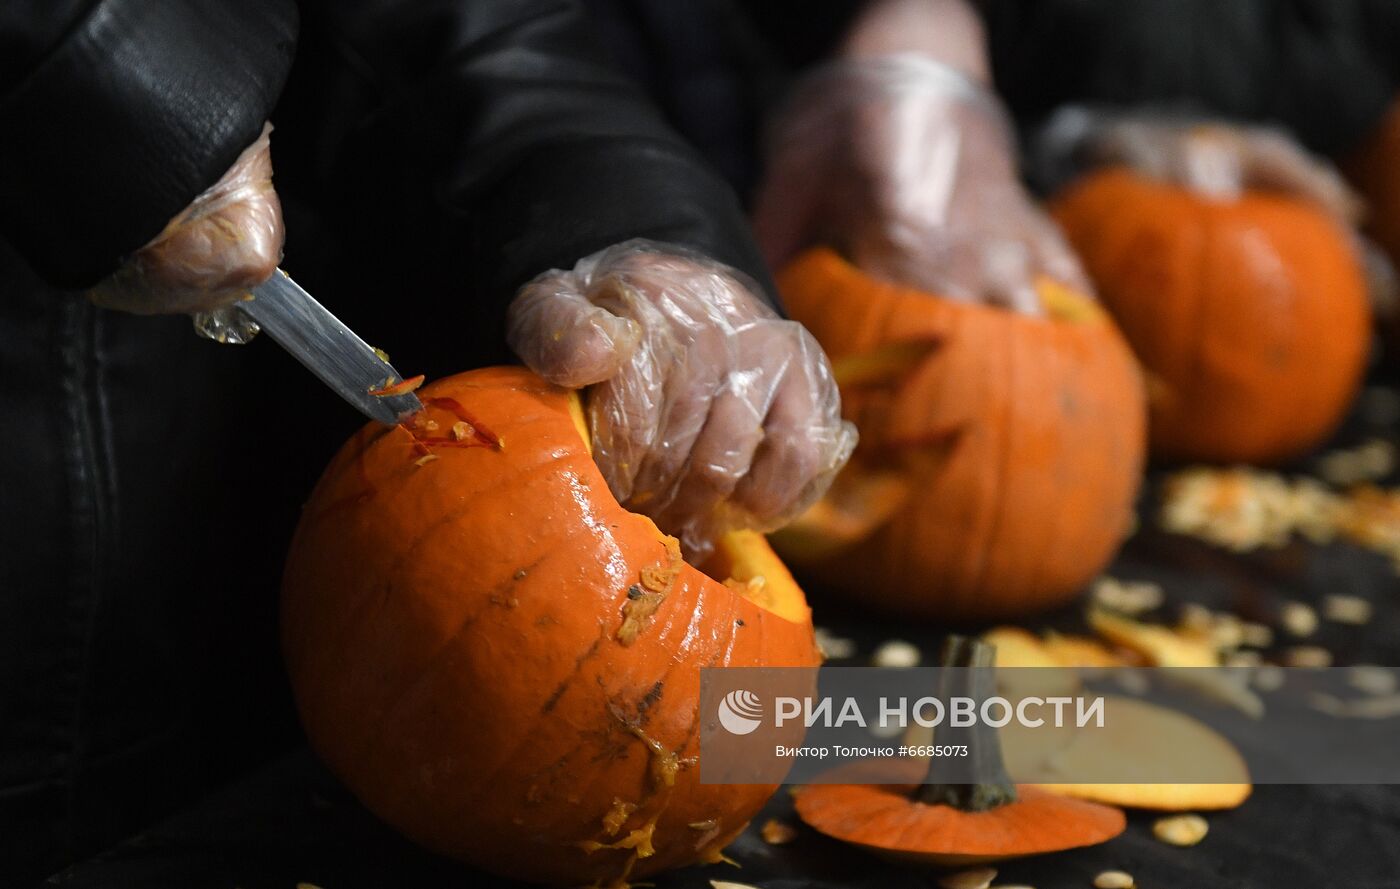 Празднование Хэллоуина в парке развлечений "Дримлэнд" в Минске